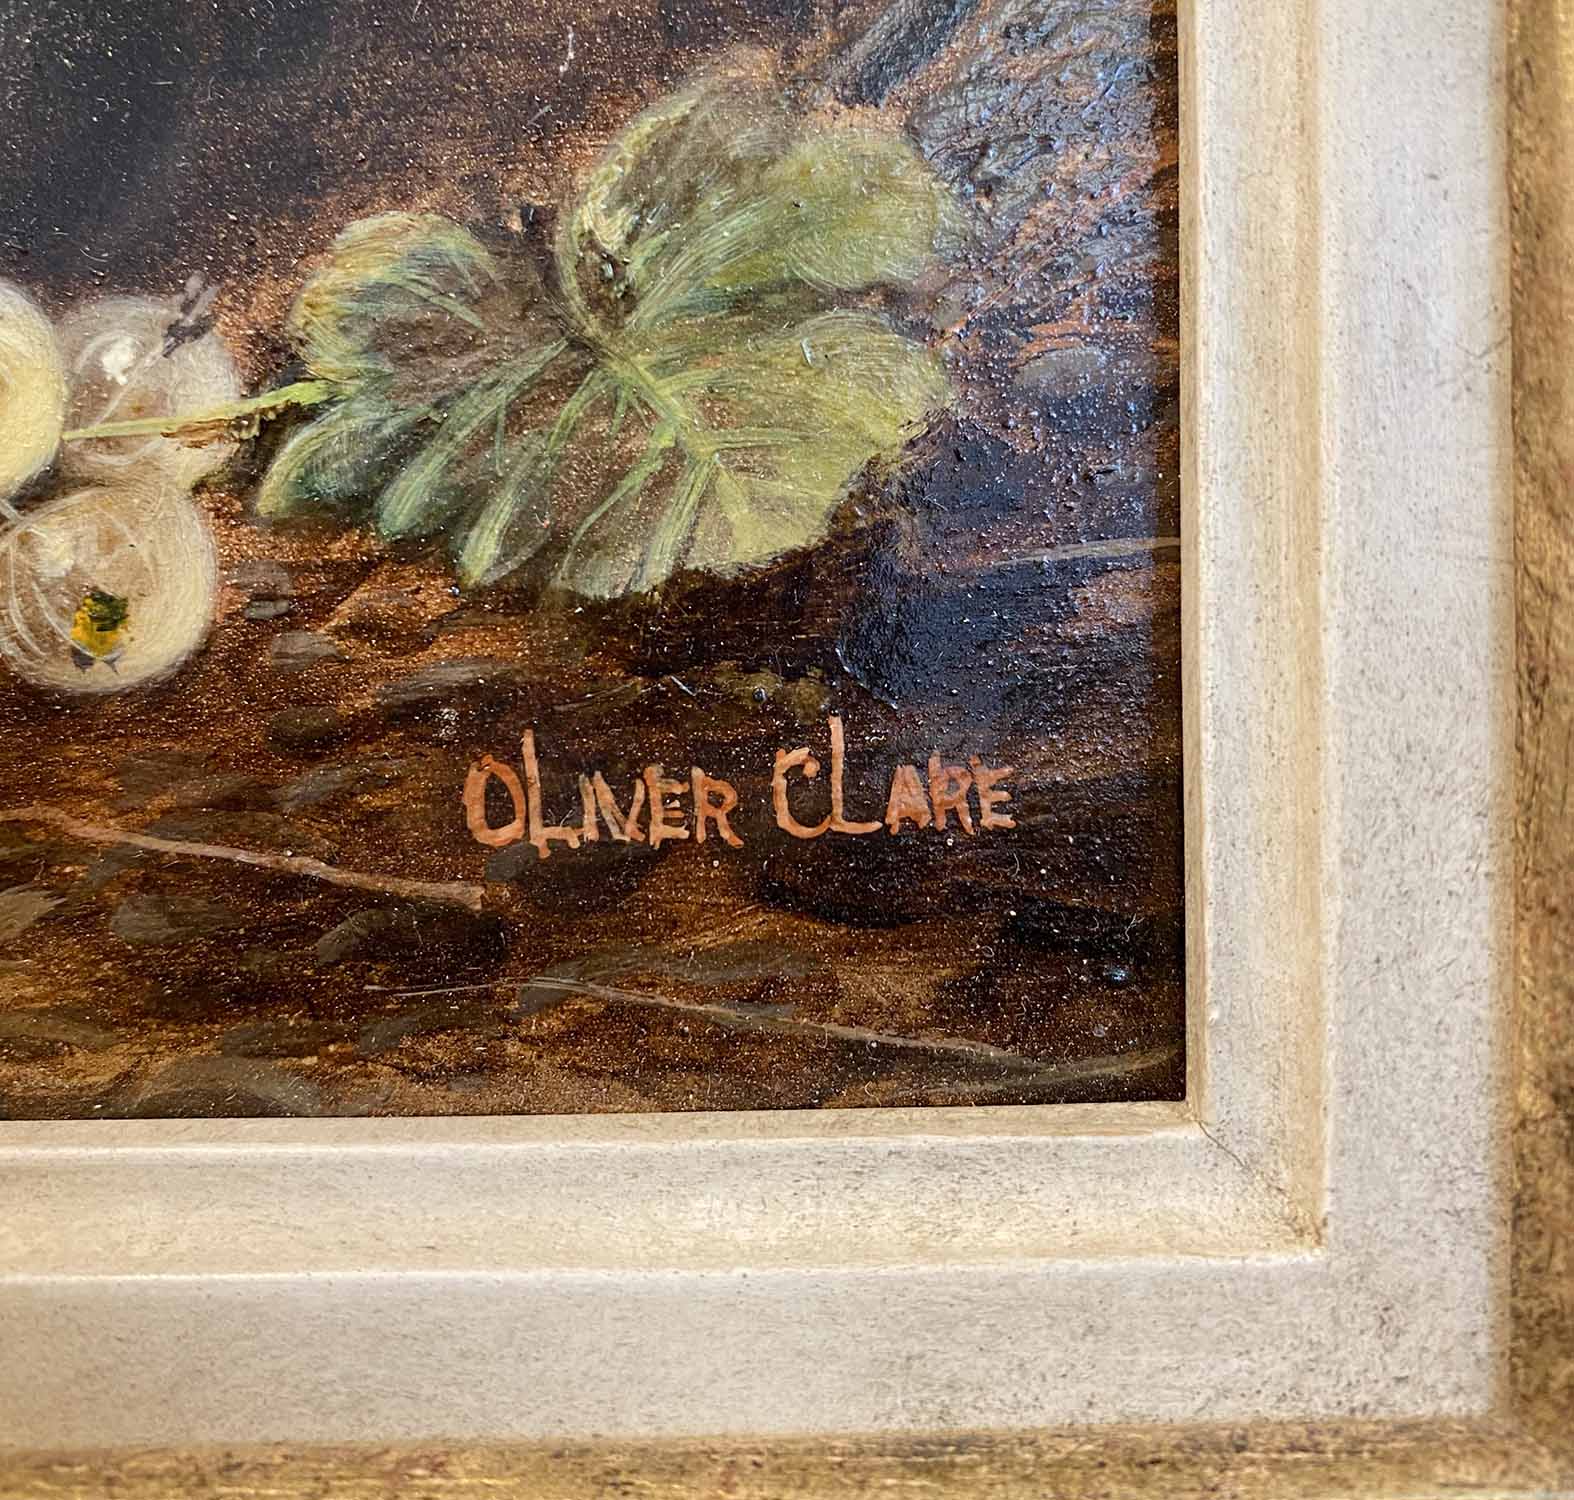 OLIVER CLARE (British 1853-1927), still lives with fruit, oils on board, framed, 29cm x 22cm. - Image 3 of 4